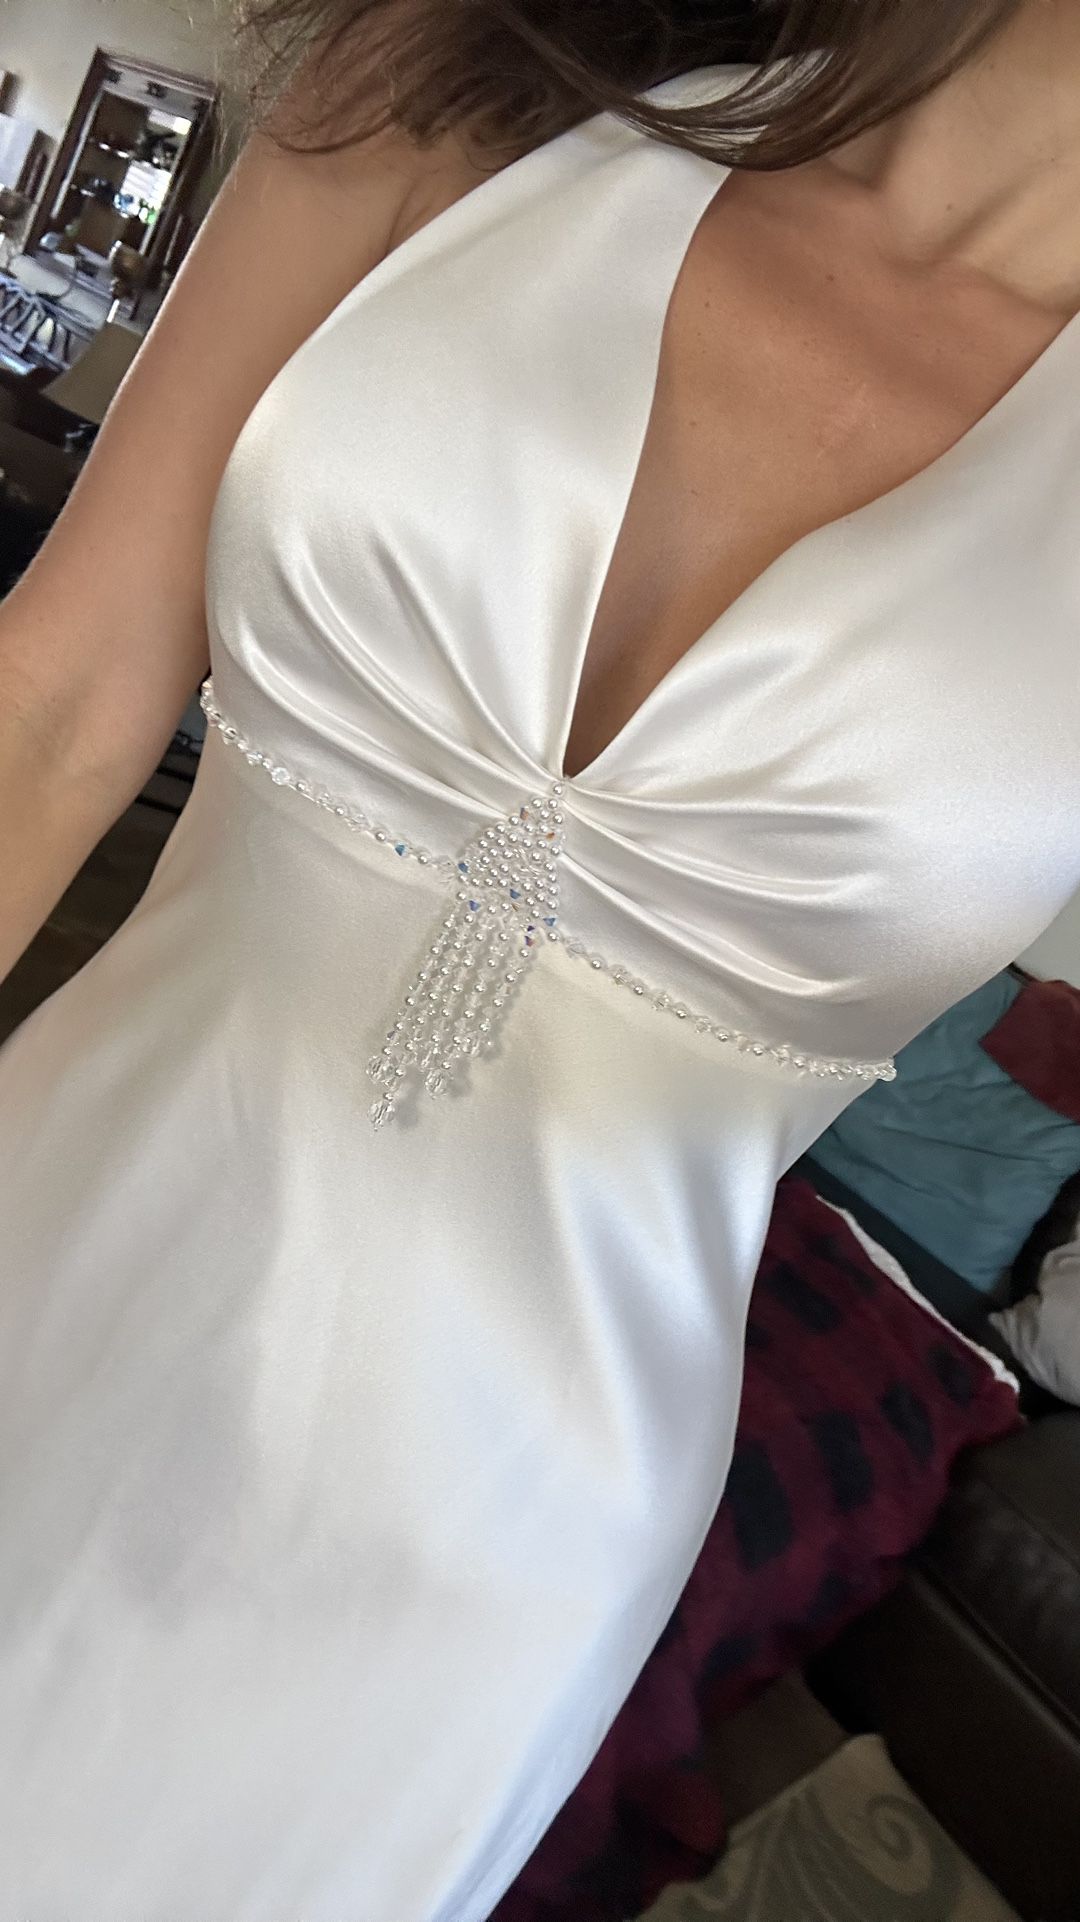 Wedding Dress Size 6 